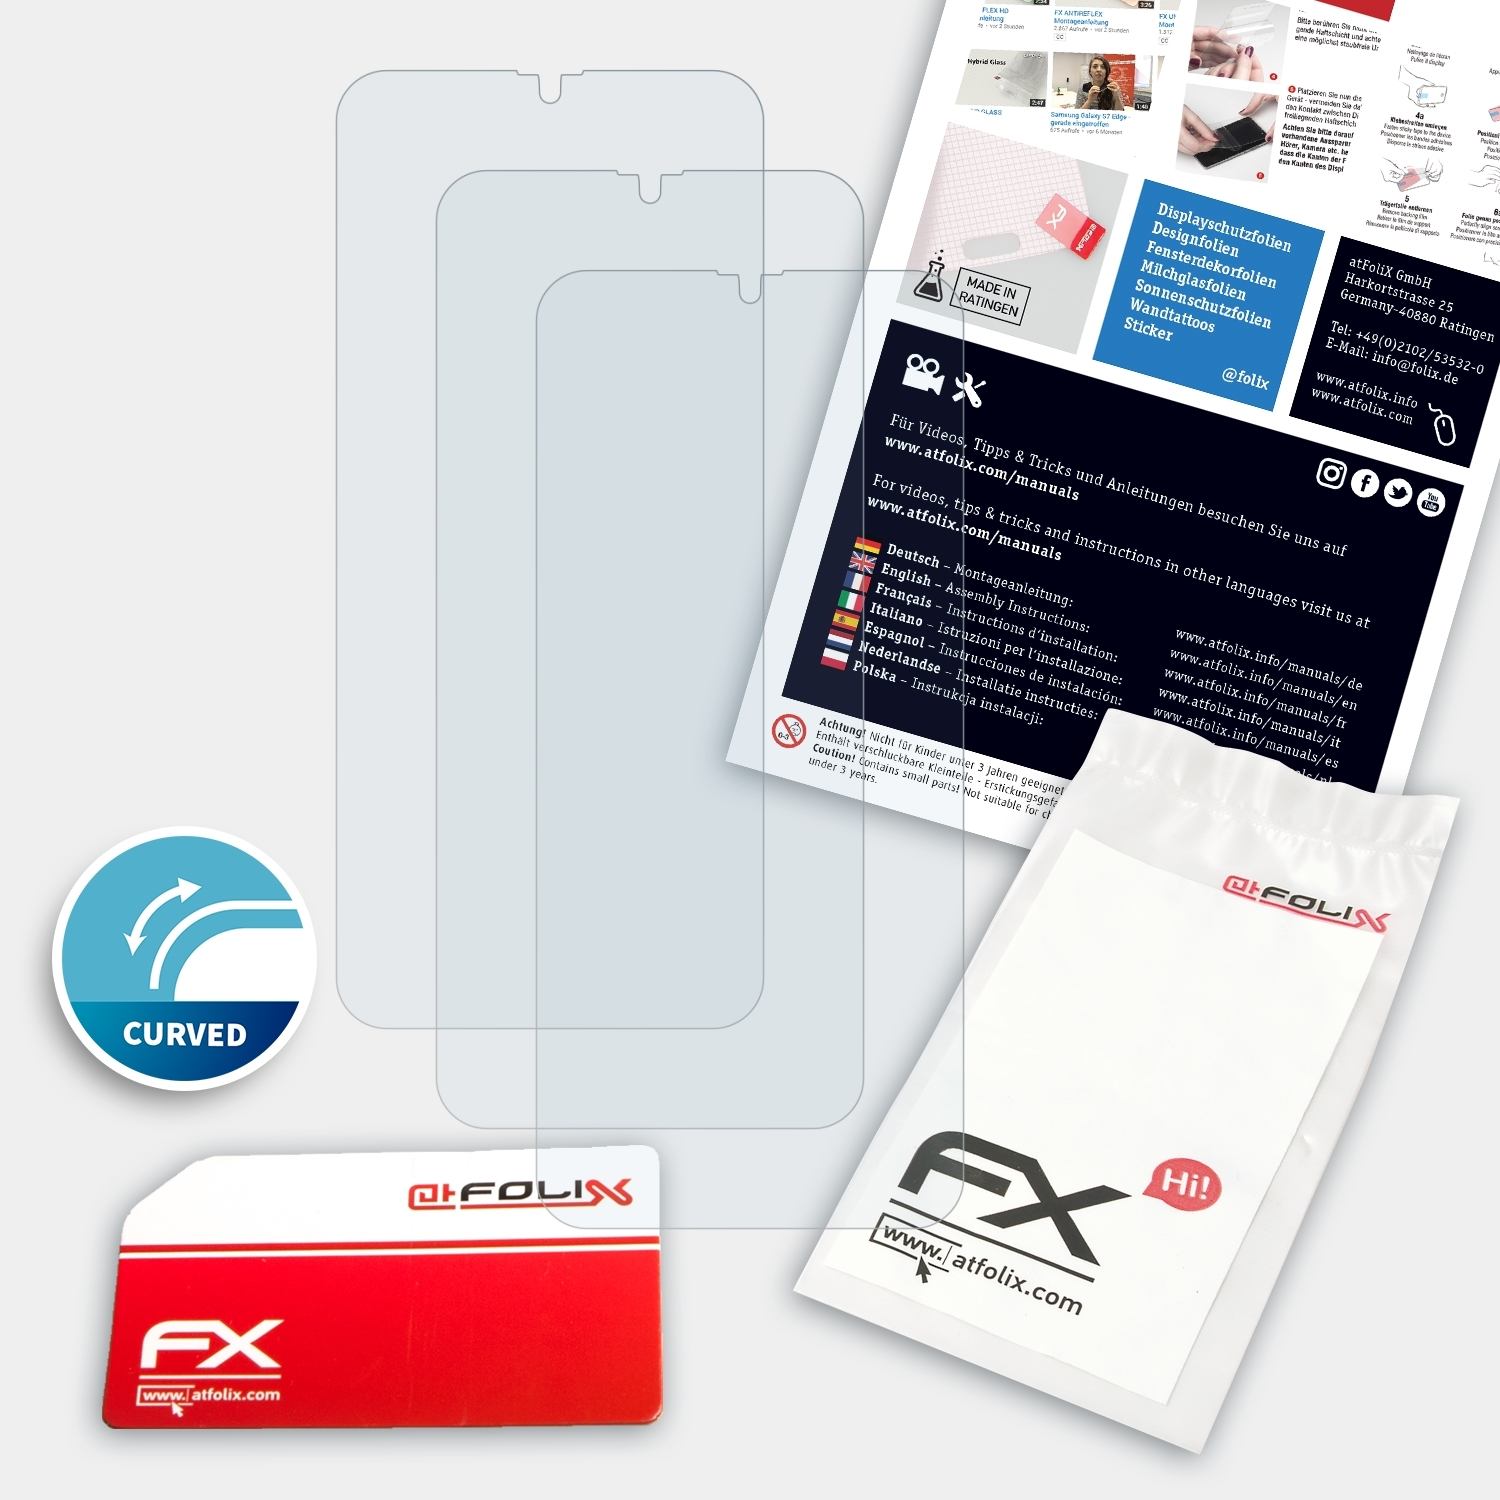 C15 FX-ActiFleX 3x Displayschutz(für Oukitel ATFOLIX Pro)